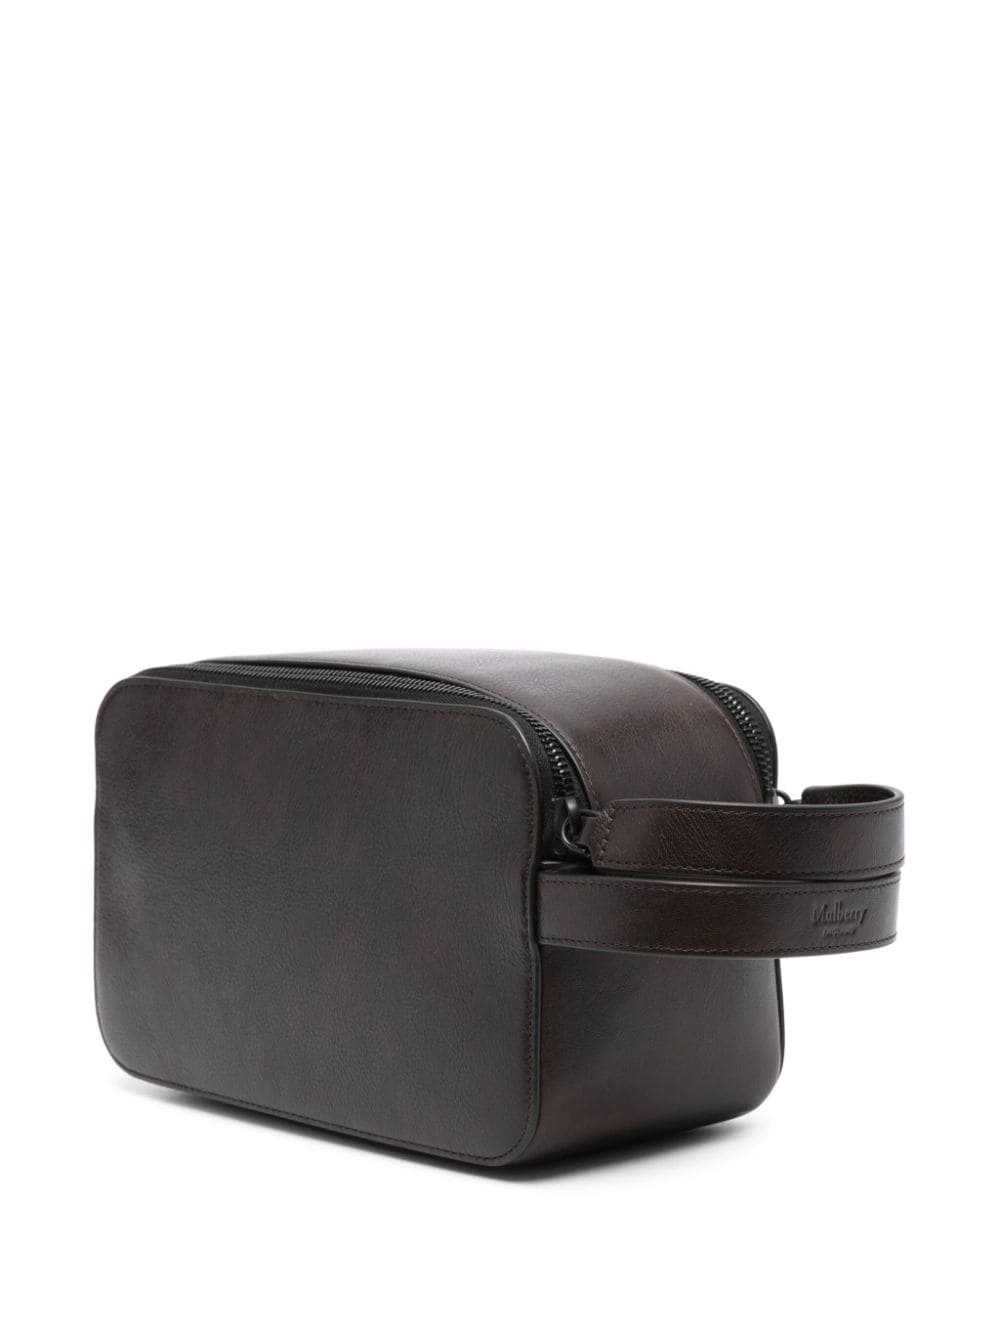 double-zip leather wash bag - 2